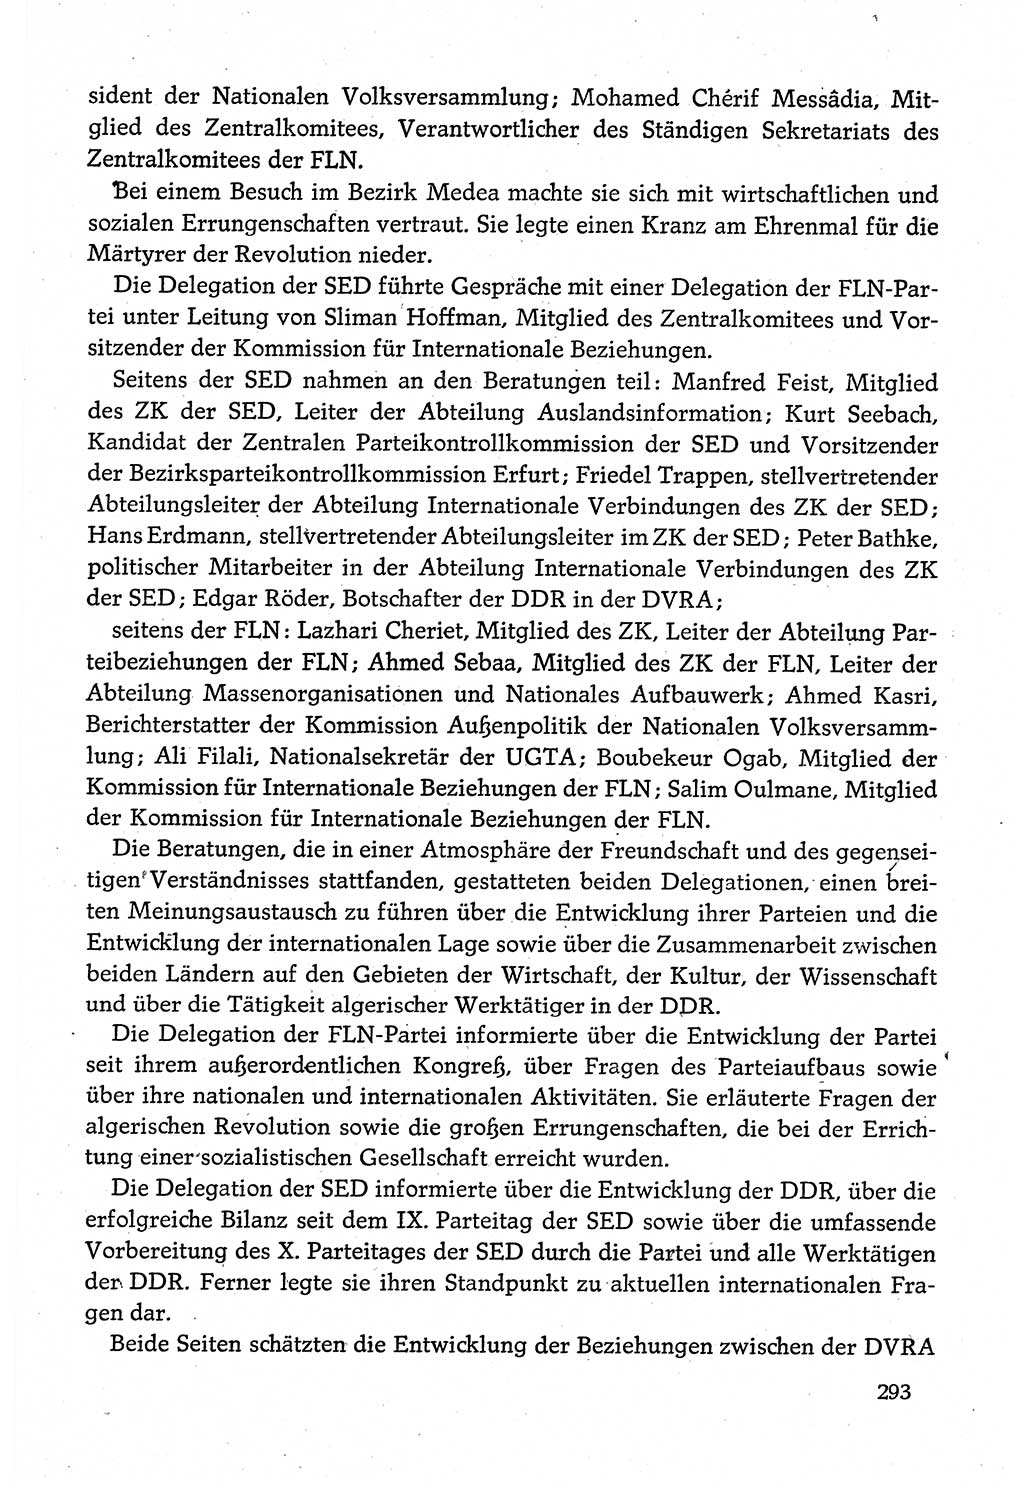 Dokumente der Sozialistischen Einheitspartei Deutschlands (SED) [Deutsche Demokratische Republik (DDR)] 1980-1981, Seite 293 (Dok. SED DDR 1980-1981, S. 293)